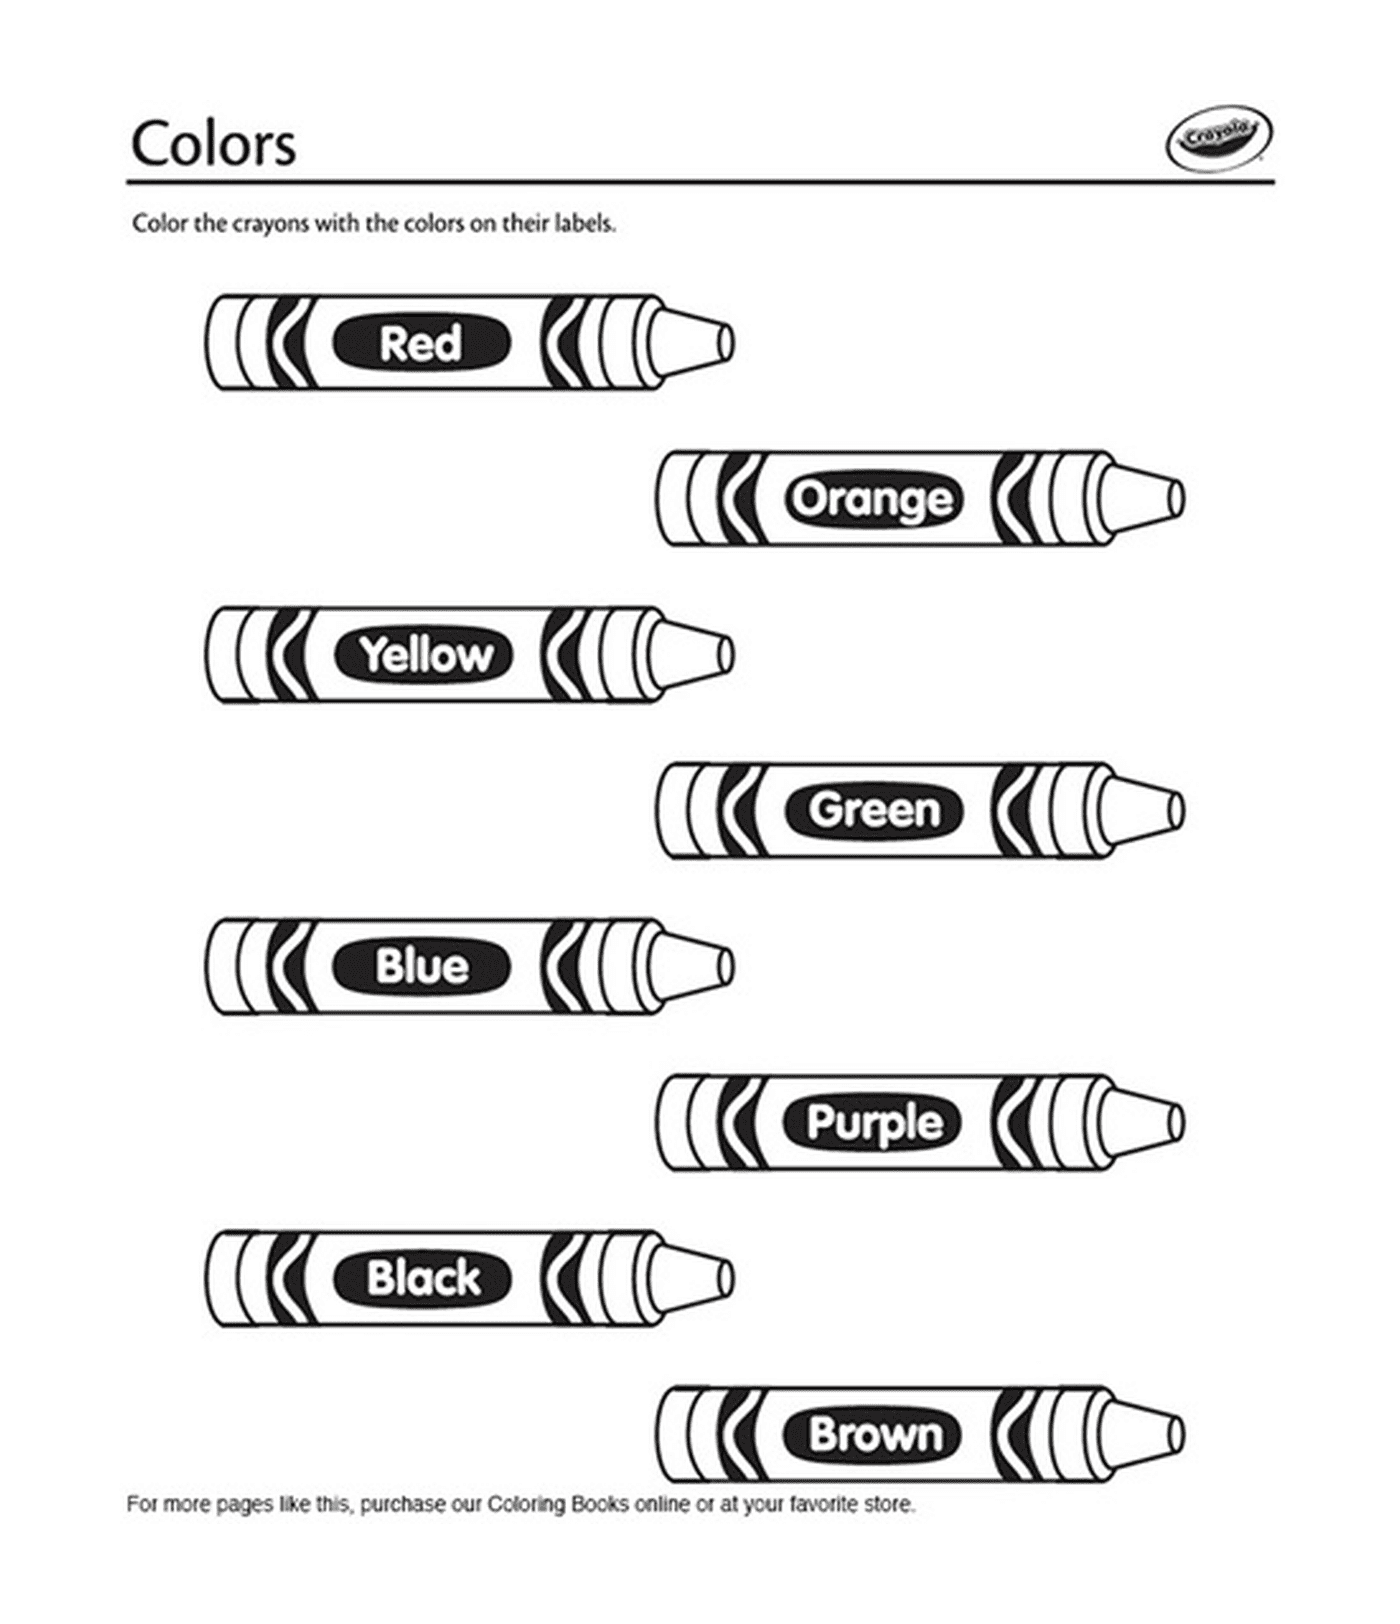   Des crayons de couleur en anglais de marque Crayola 